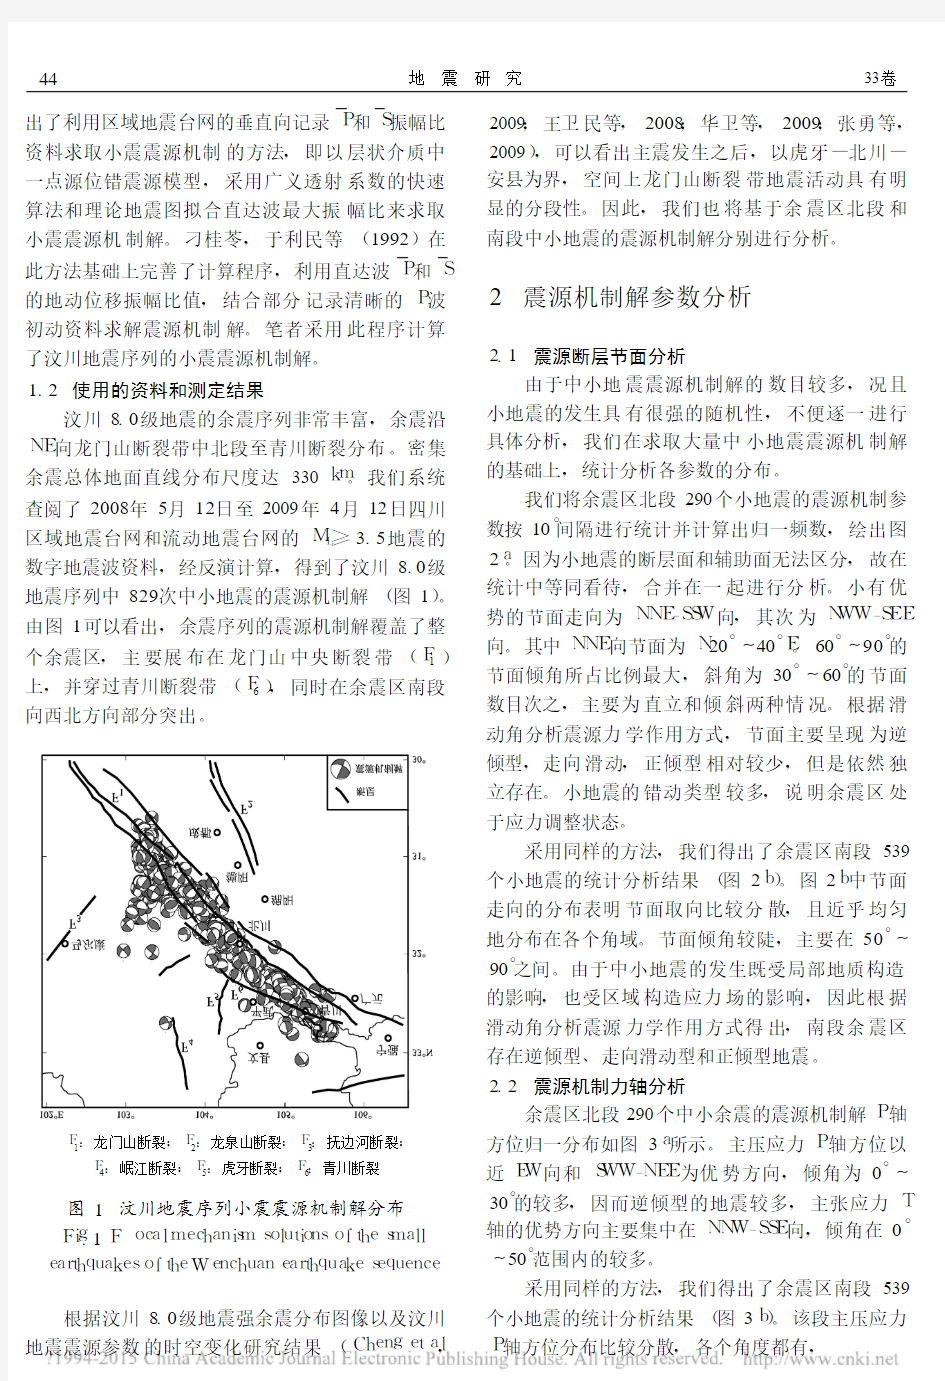 汶川8_0级地震序列的小震震源机制及应力场特征